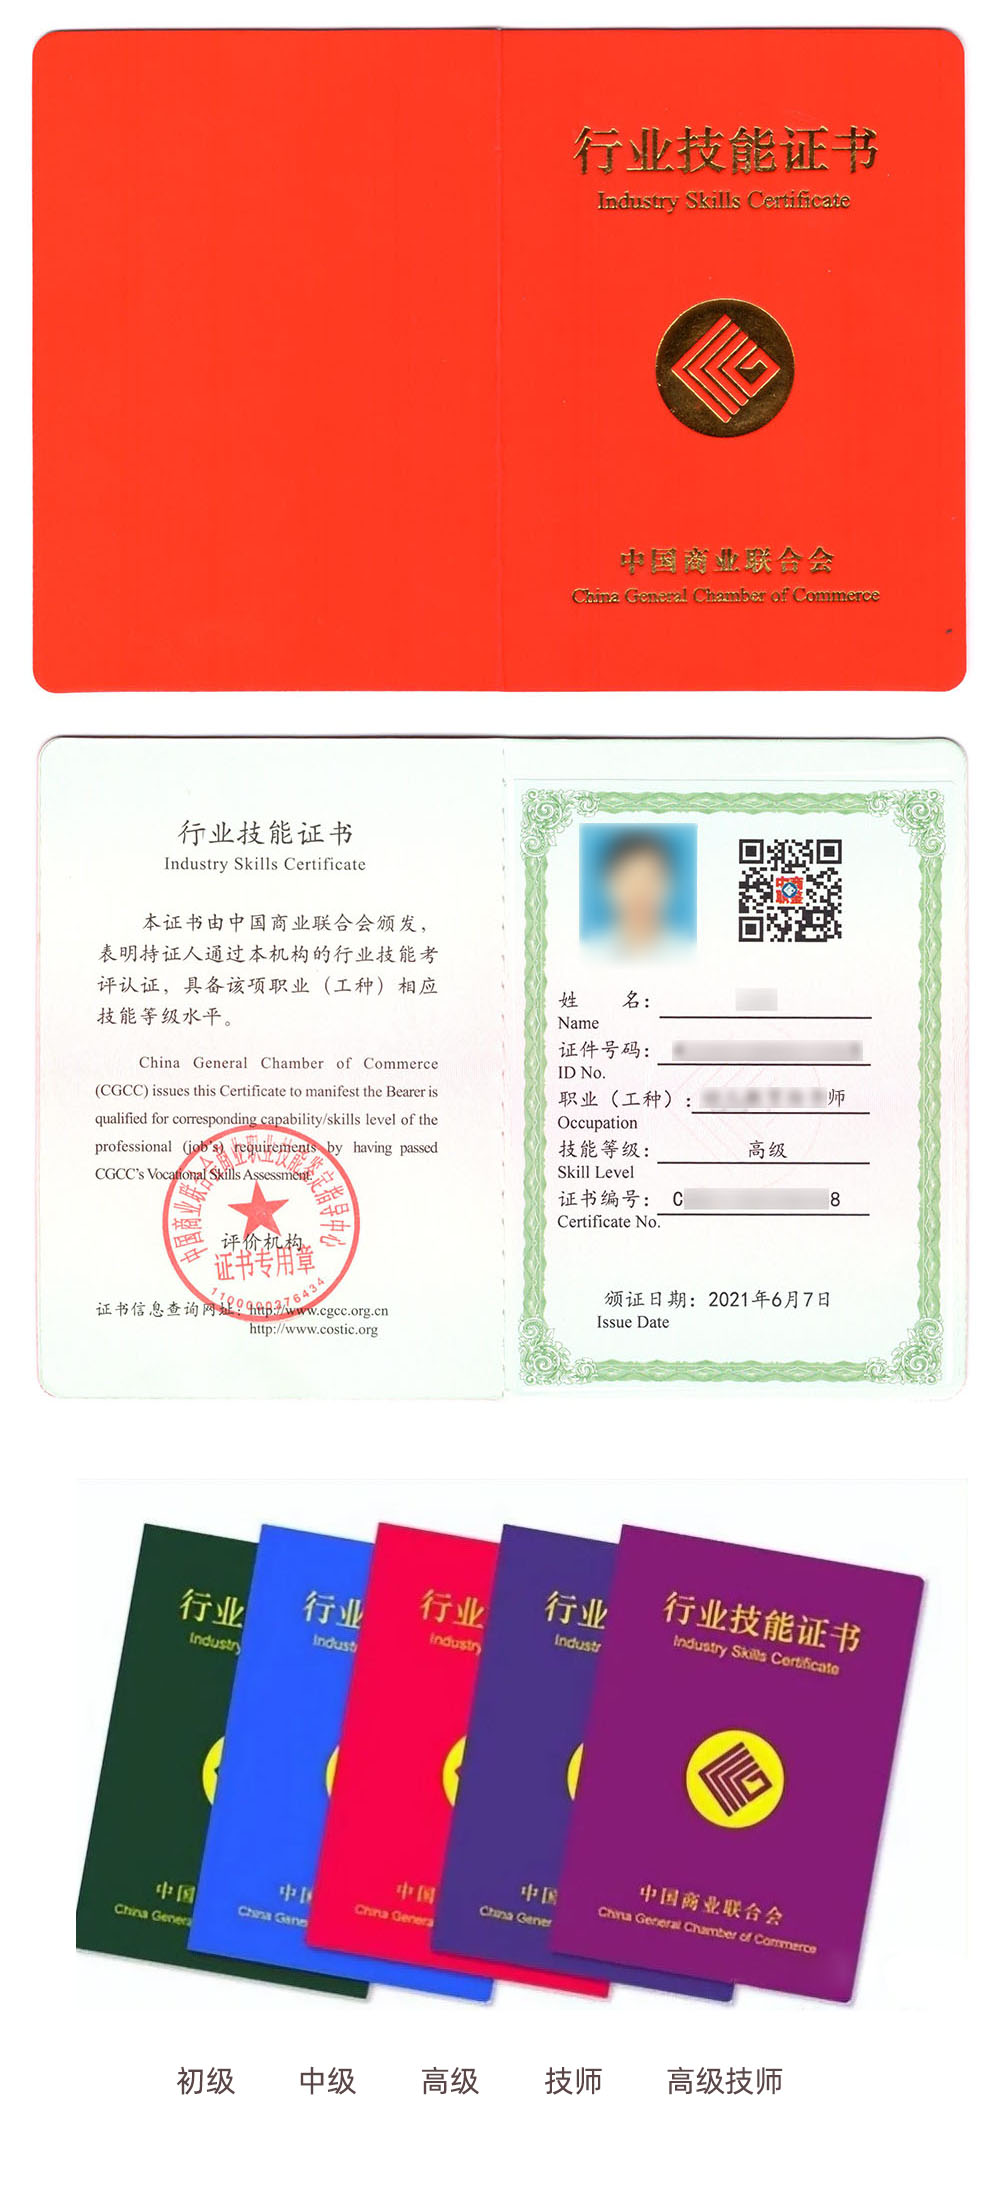 中国商业联合会商业职业技能鉴定中心 行业技能证书 食品安全监测管理证证书样本